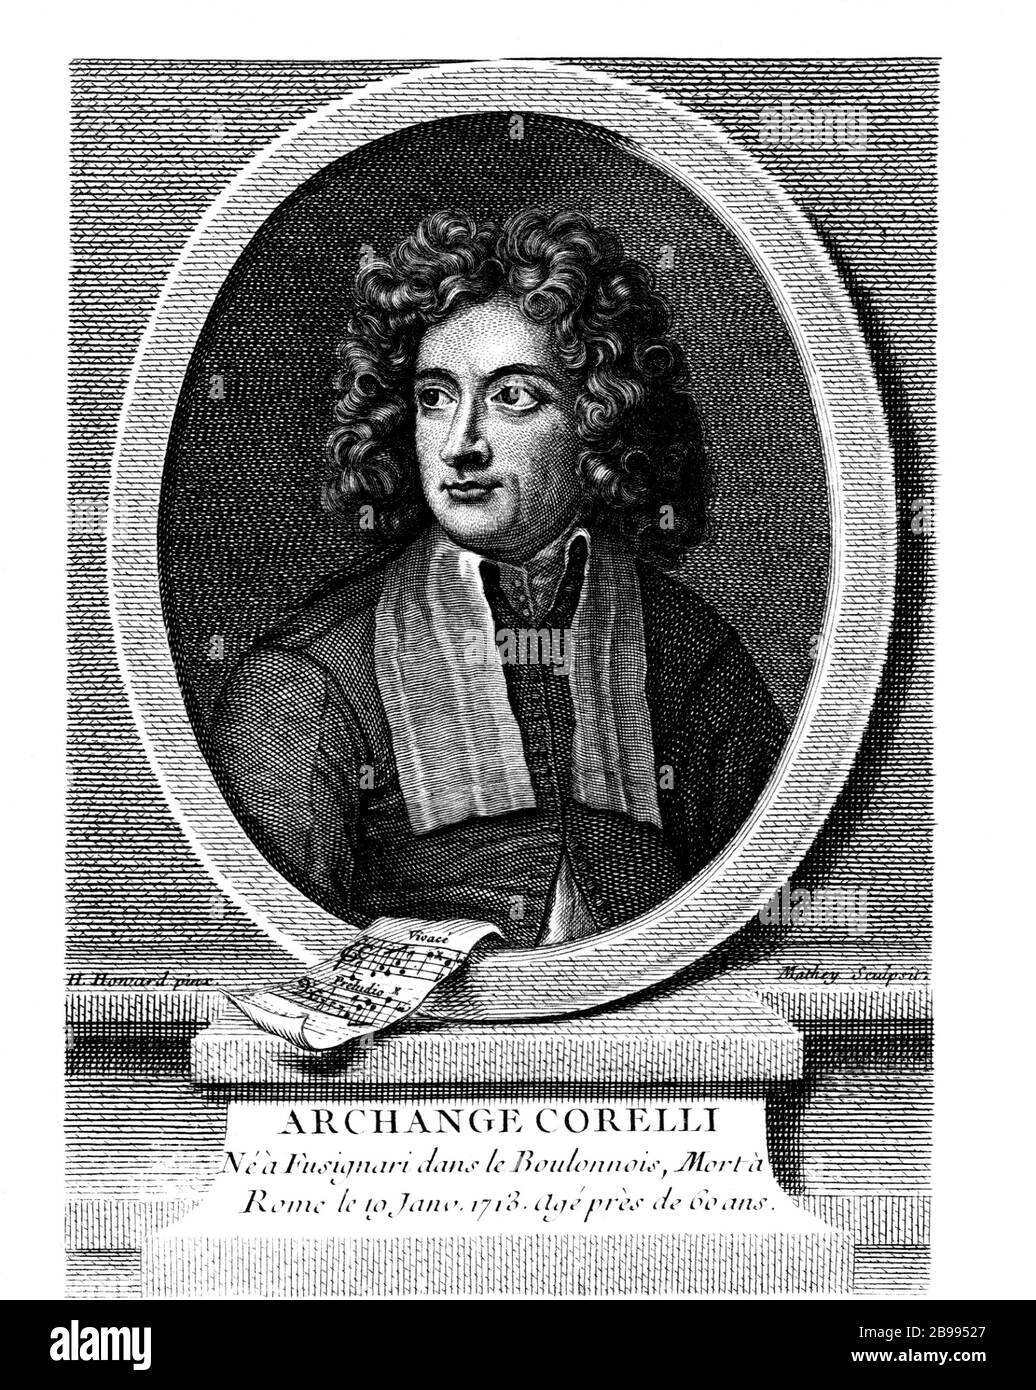 1710 c, ITALIEN: Der italienische Musikkomponist ARCANGELO CORELLI (* 1653; † 1713). Porträt von H. Howard, eingraviert von Mathey, im Jahre 1720. - MUSICA CLASSICA BAROCCA - BAROCCO - BAROCCO - BAROCCO - BAROCO - KLASSIK - COMPOSITORE - Porträt - Ritratto - MUSICA - Gravur - Incisione - Illustration - Illustrazione --- Archivio GBB Stockfoto